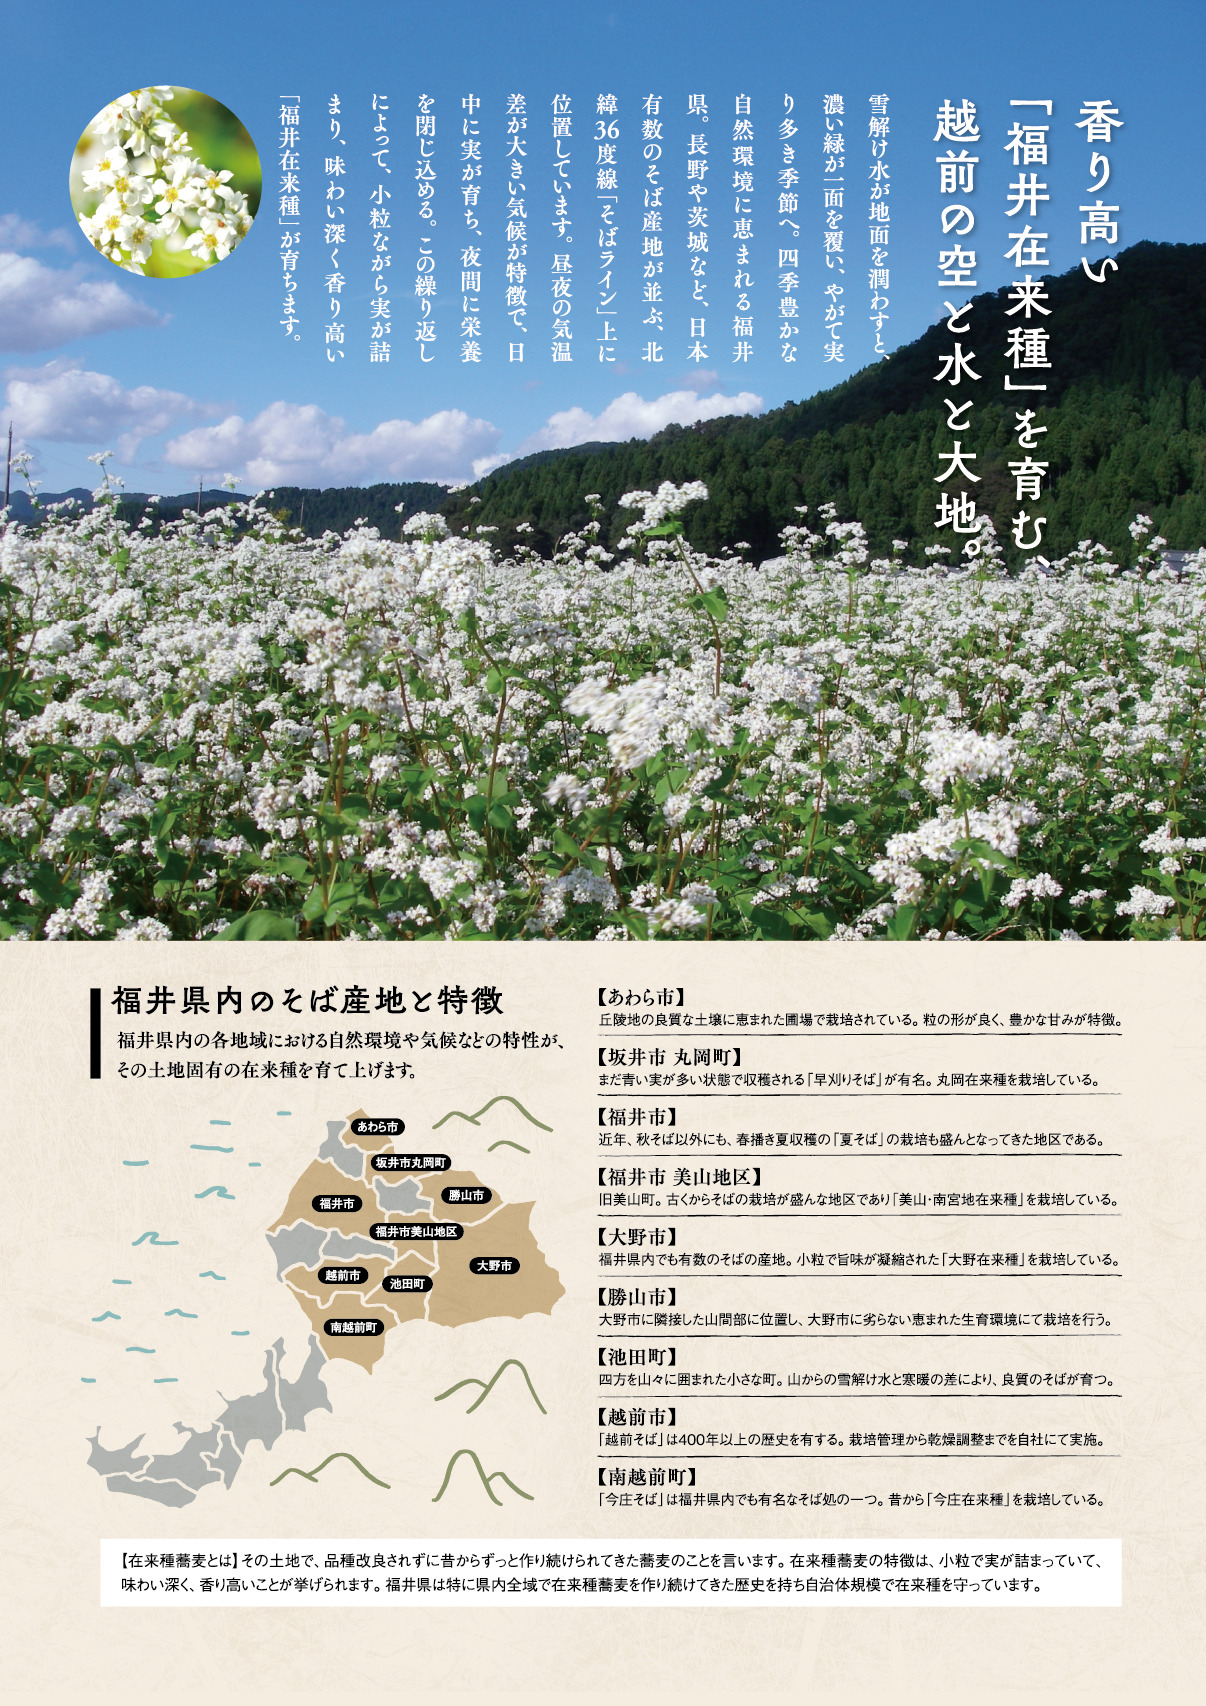 香り高い「福井在来種」を育む、越前の空と水と大地。福井県内のそば産地と特徴。